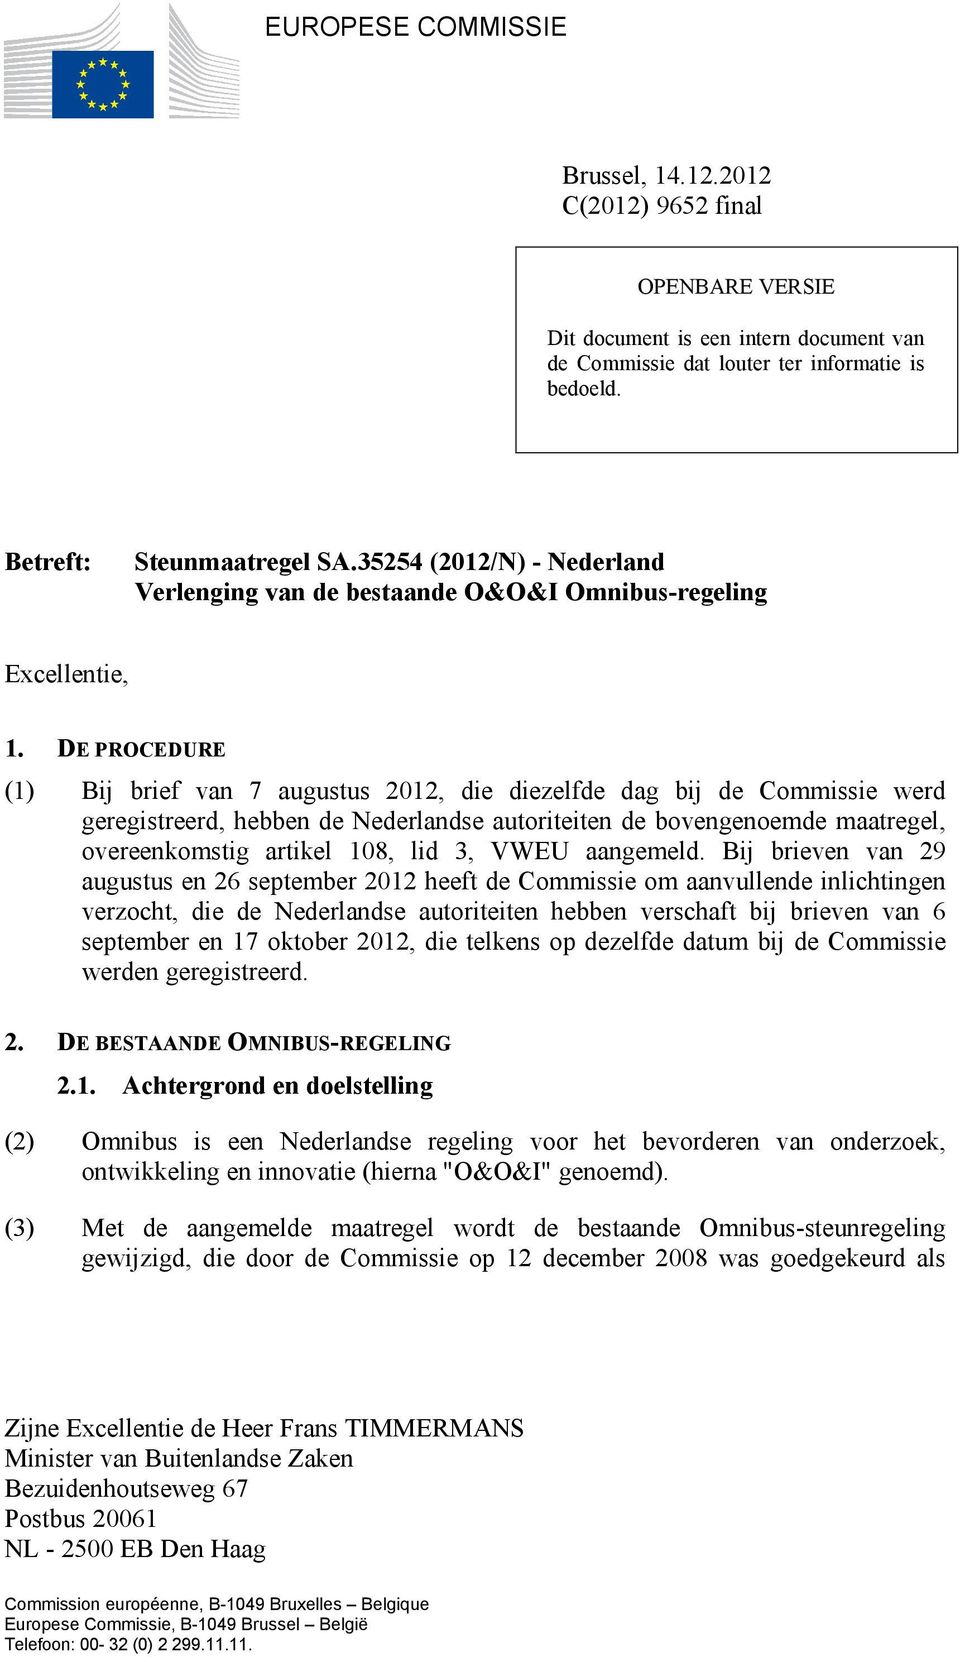 DE PROCEDURE (1) Bij brief van 7 augustus 2012, die diezelfde dag bij de Commissie werd geregistreerd, hebben de Nederlandse autoriteiten de bovengenoemde maatregel, overeenkomstig artikel 108, lid